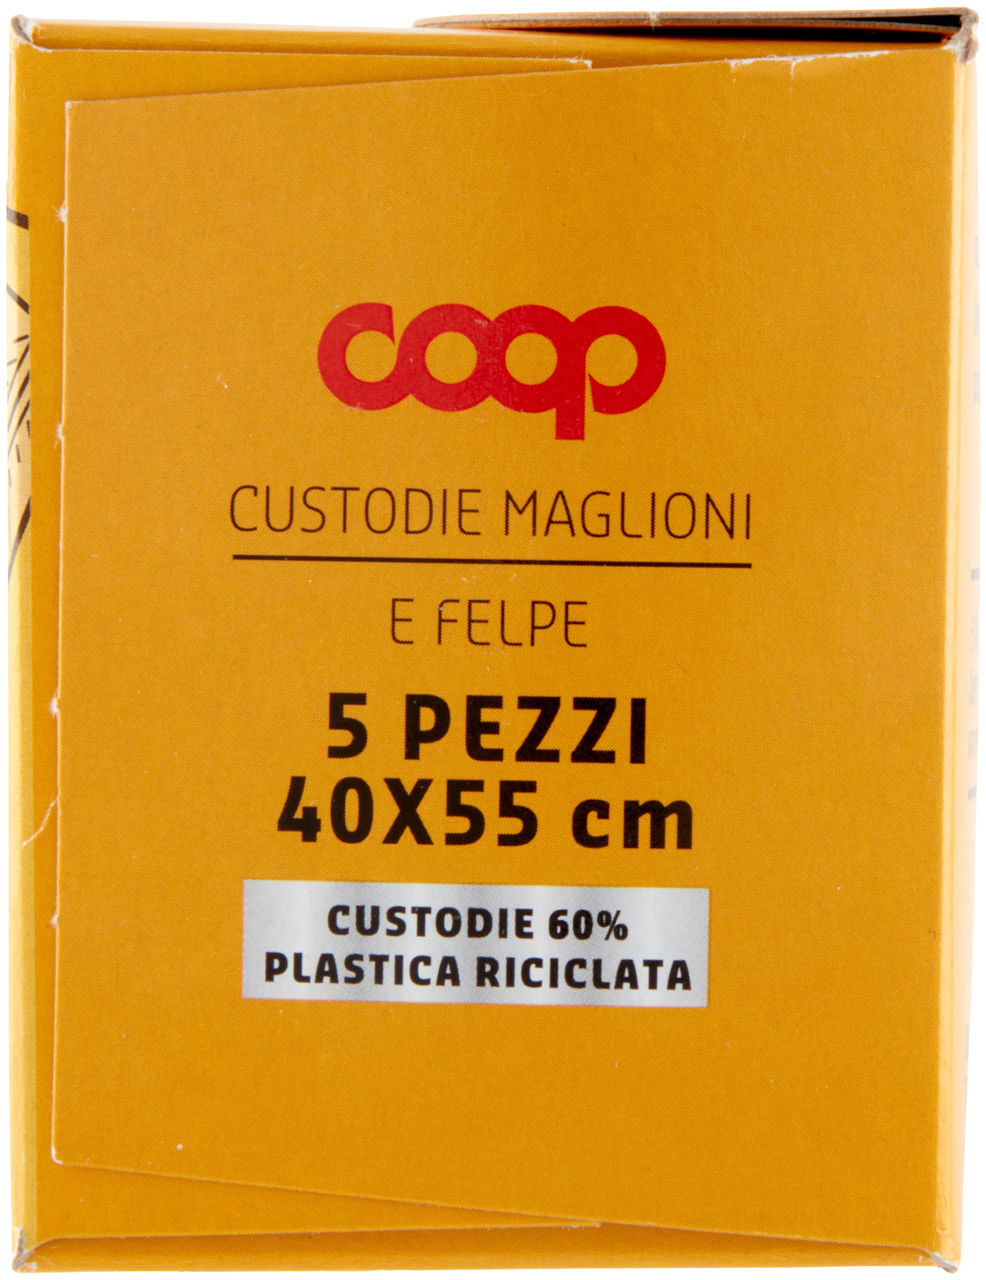 CUSTODIE COOP MAGLIONI E FELPE IN PLASTICA RICICLATA - 5PZ - 3